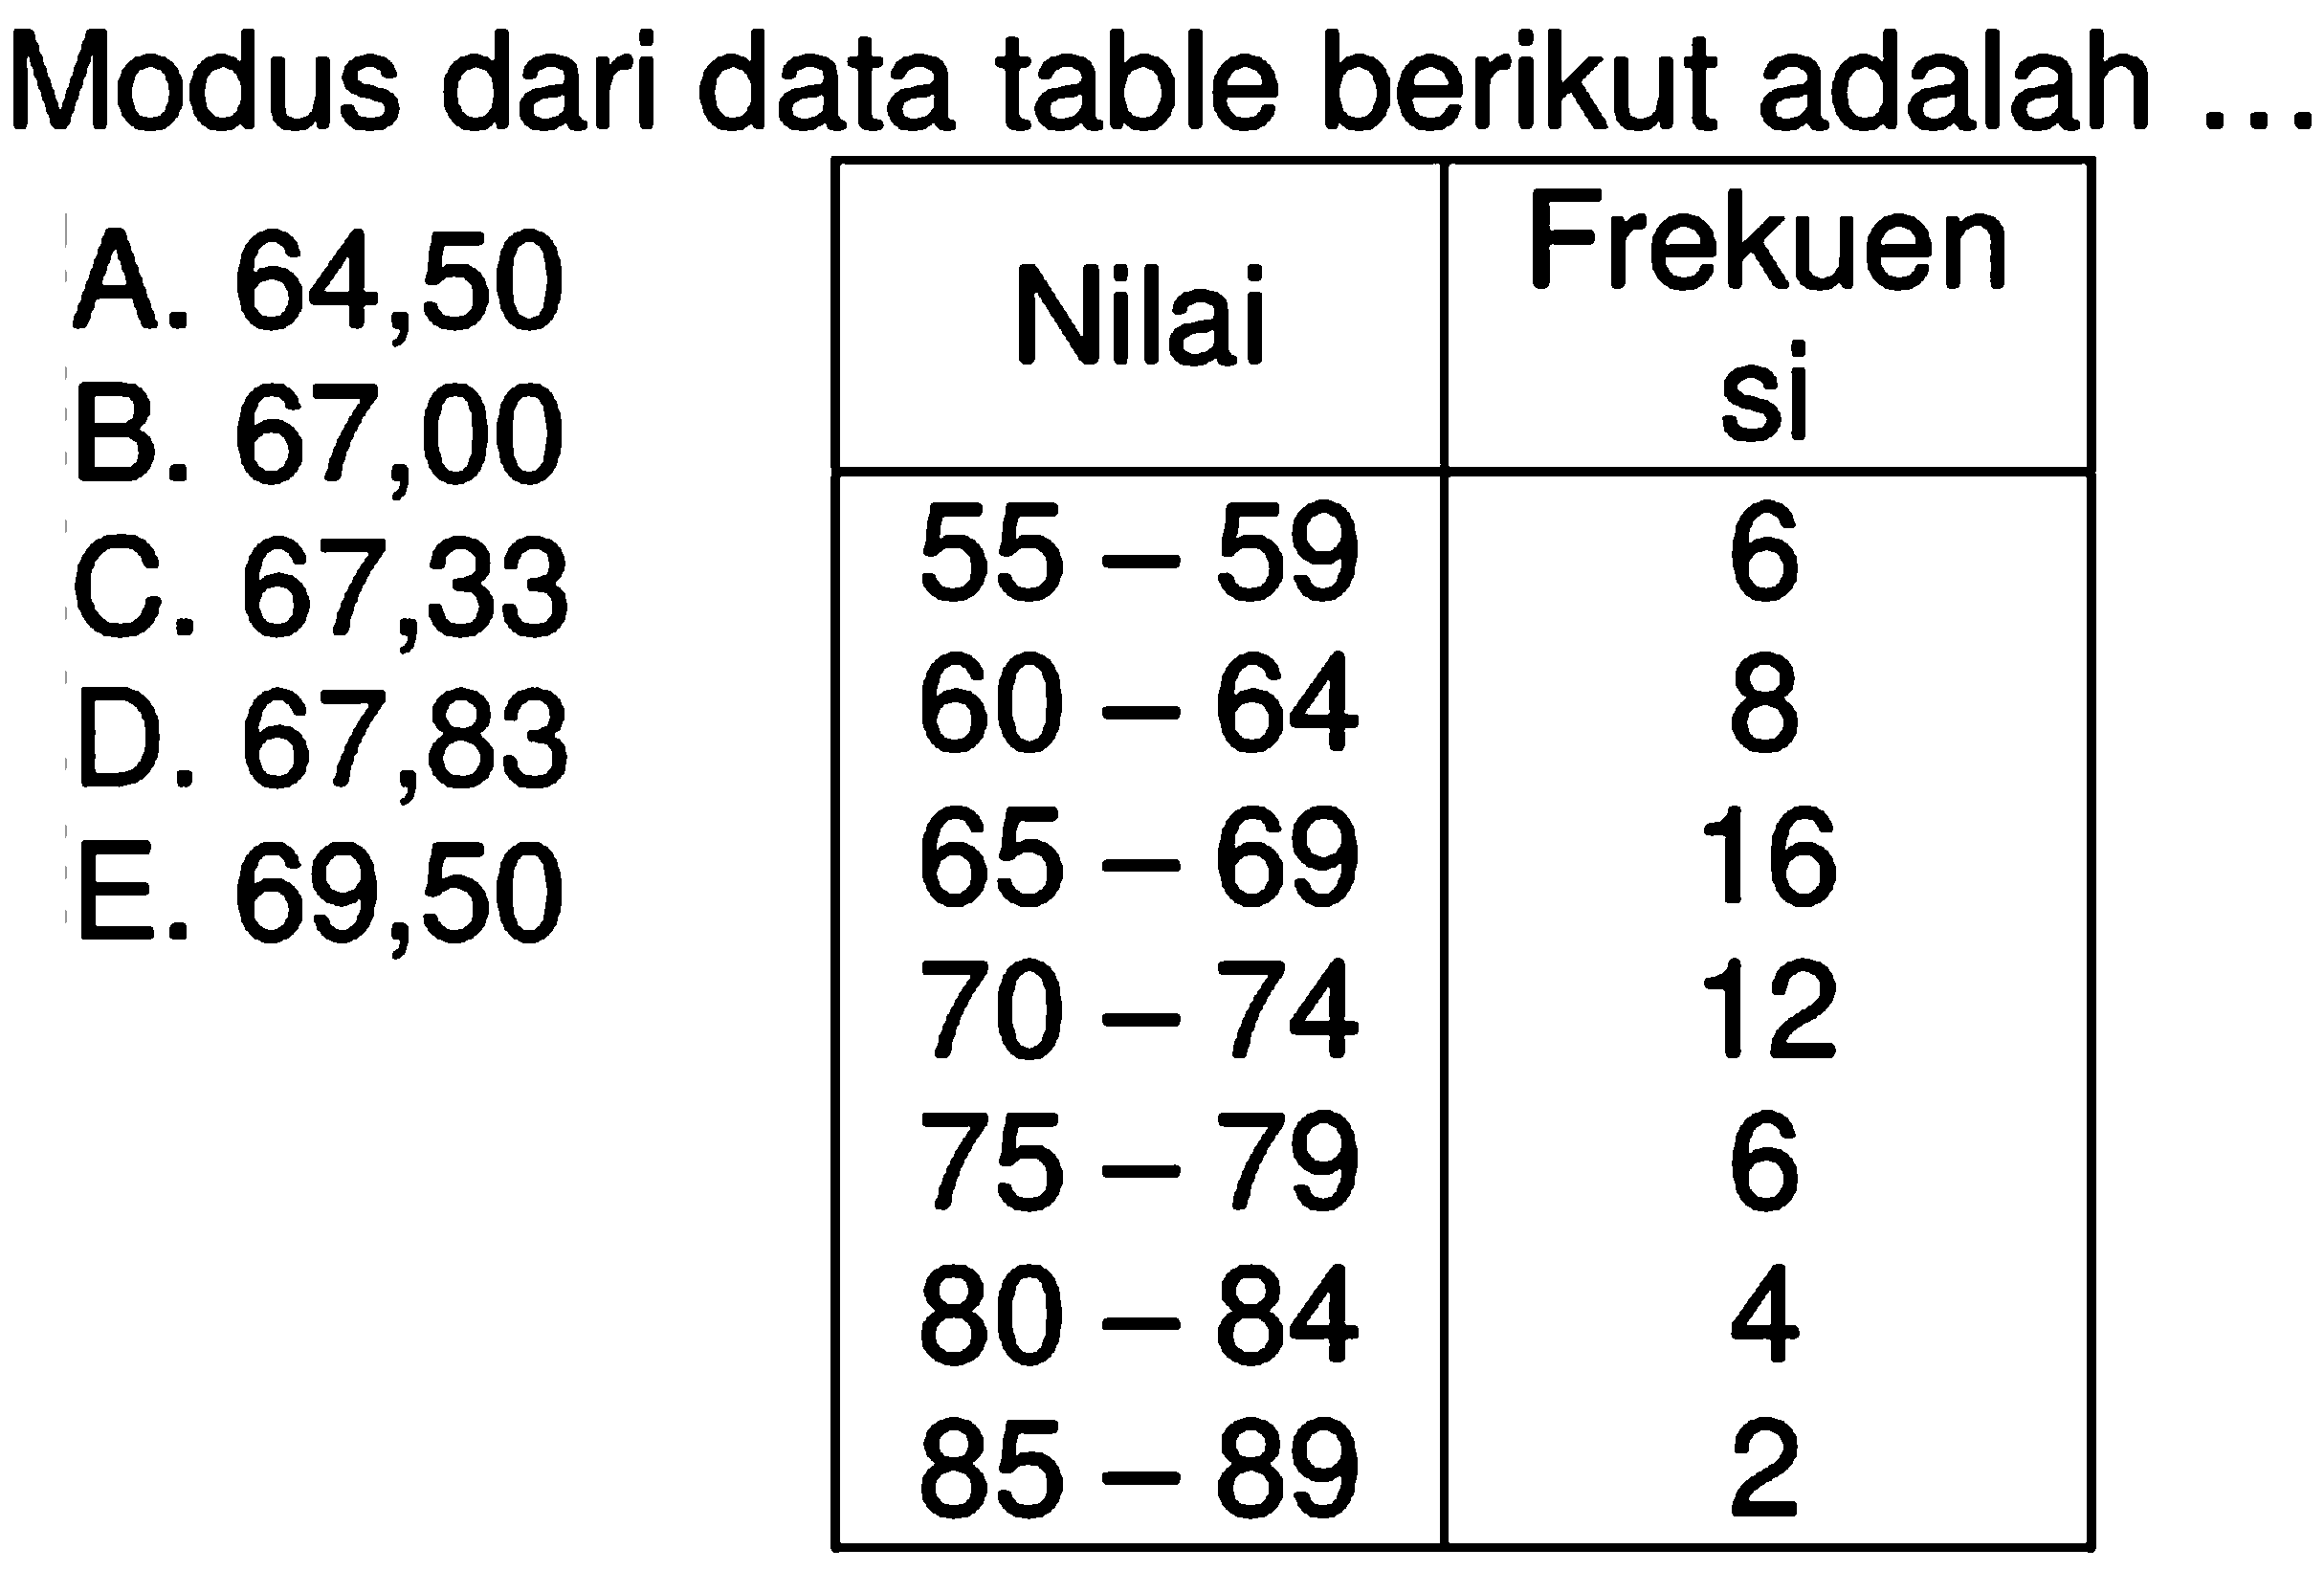 Modus dari data table berikut adalah .... Nilai Frekuensi 55-59 6 60-64 8 65-69 16 70-74 12 75-79 6 80-84 4 85-89 2